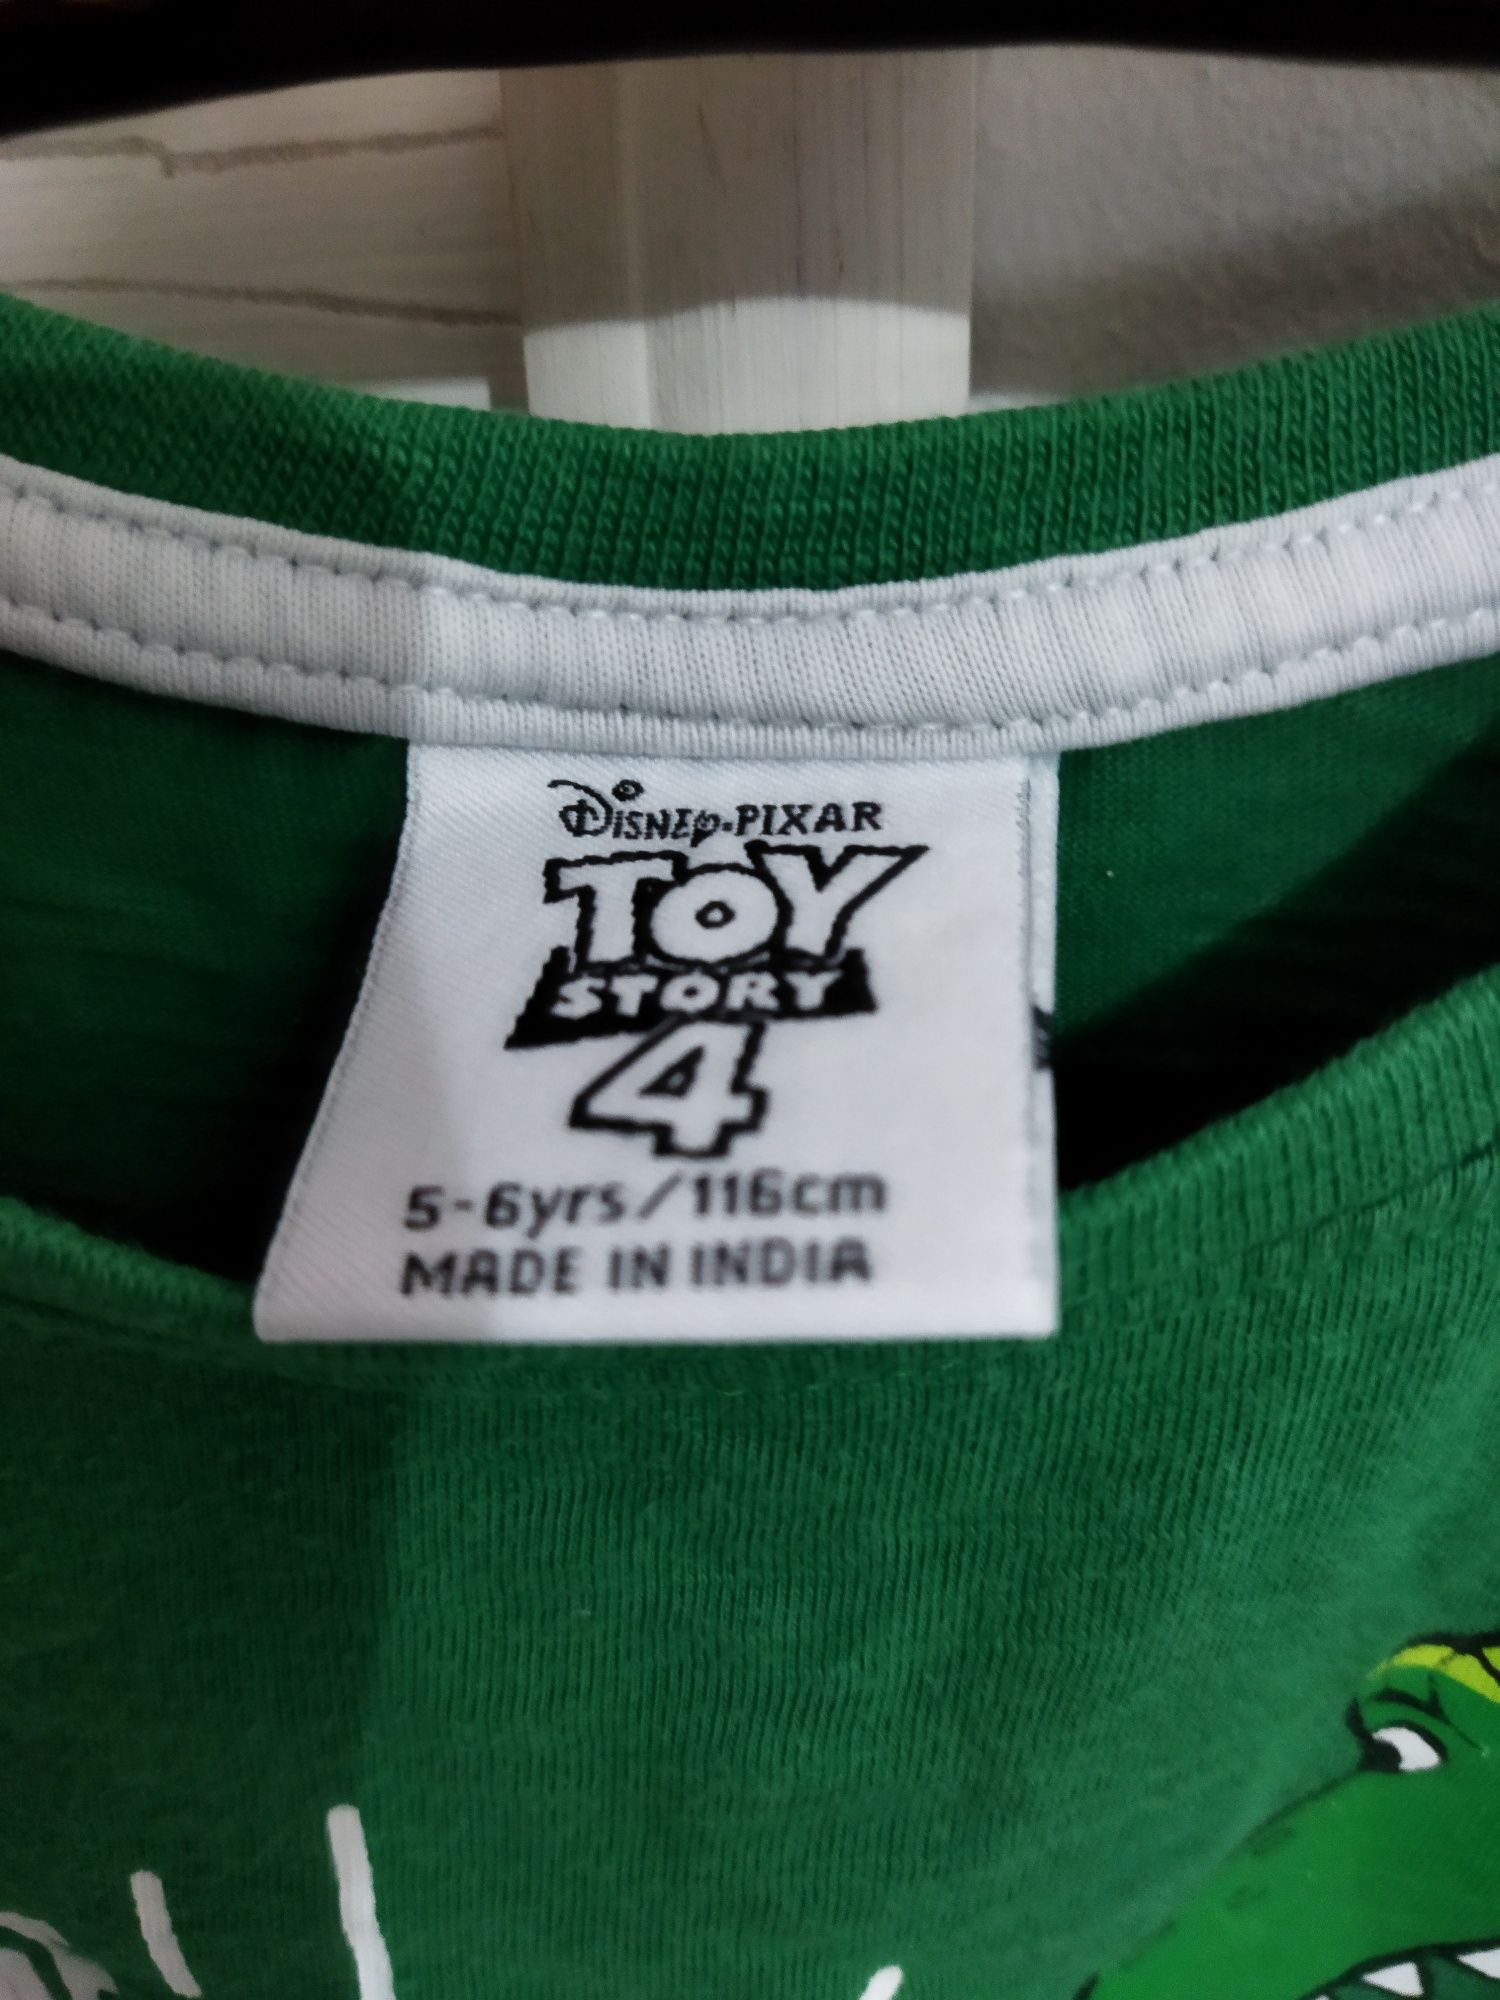 Bluza originala Toy Story 4 pentru copii vârstă 5-6 ani mărimea 116